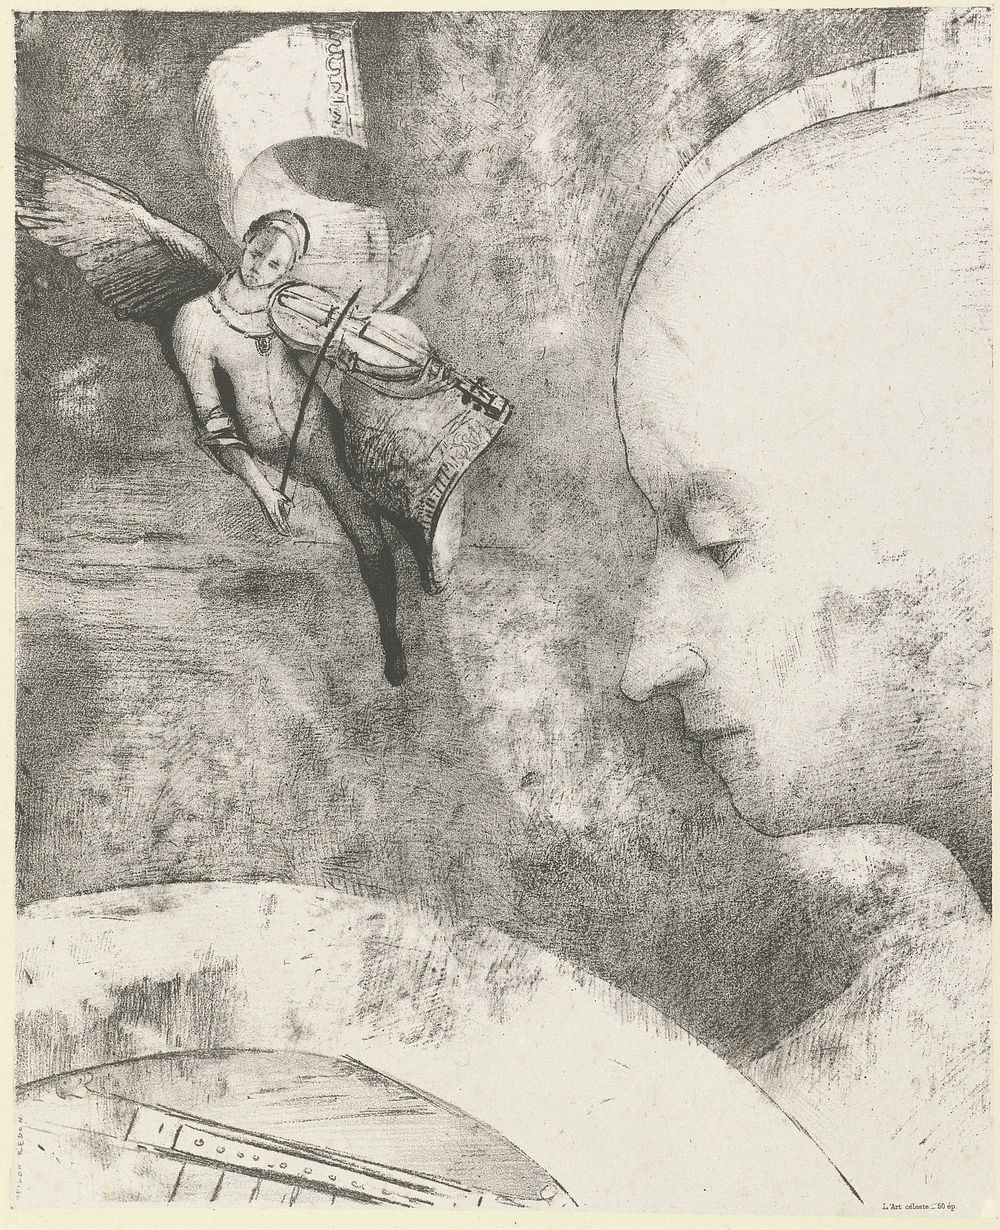 Hemelse kunst (1894) by Odilon Redon and Furstein